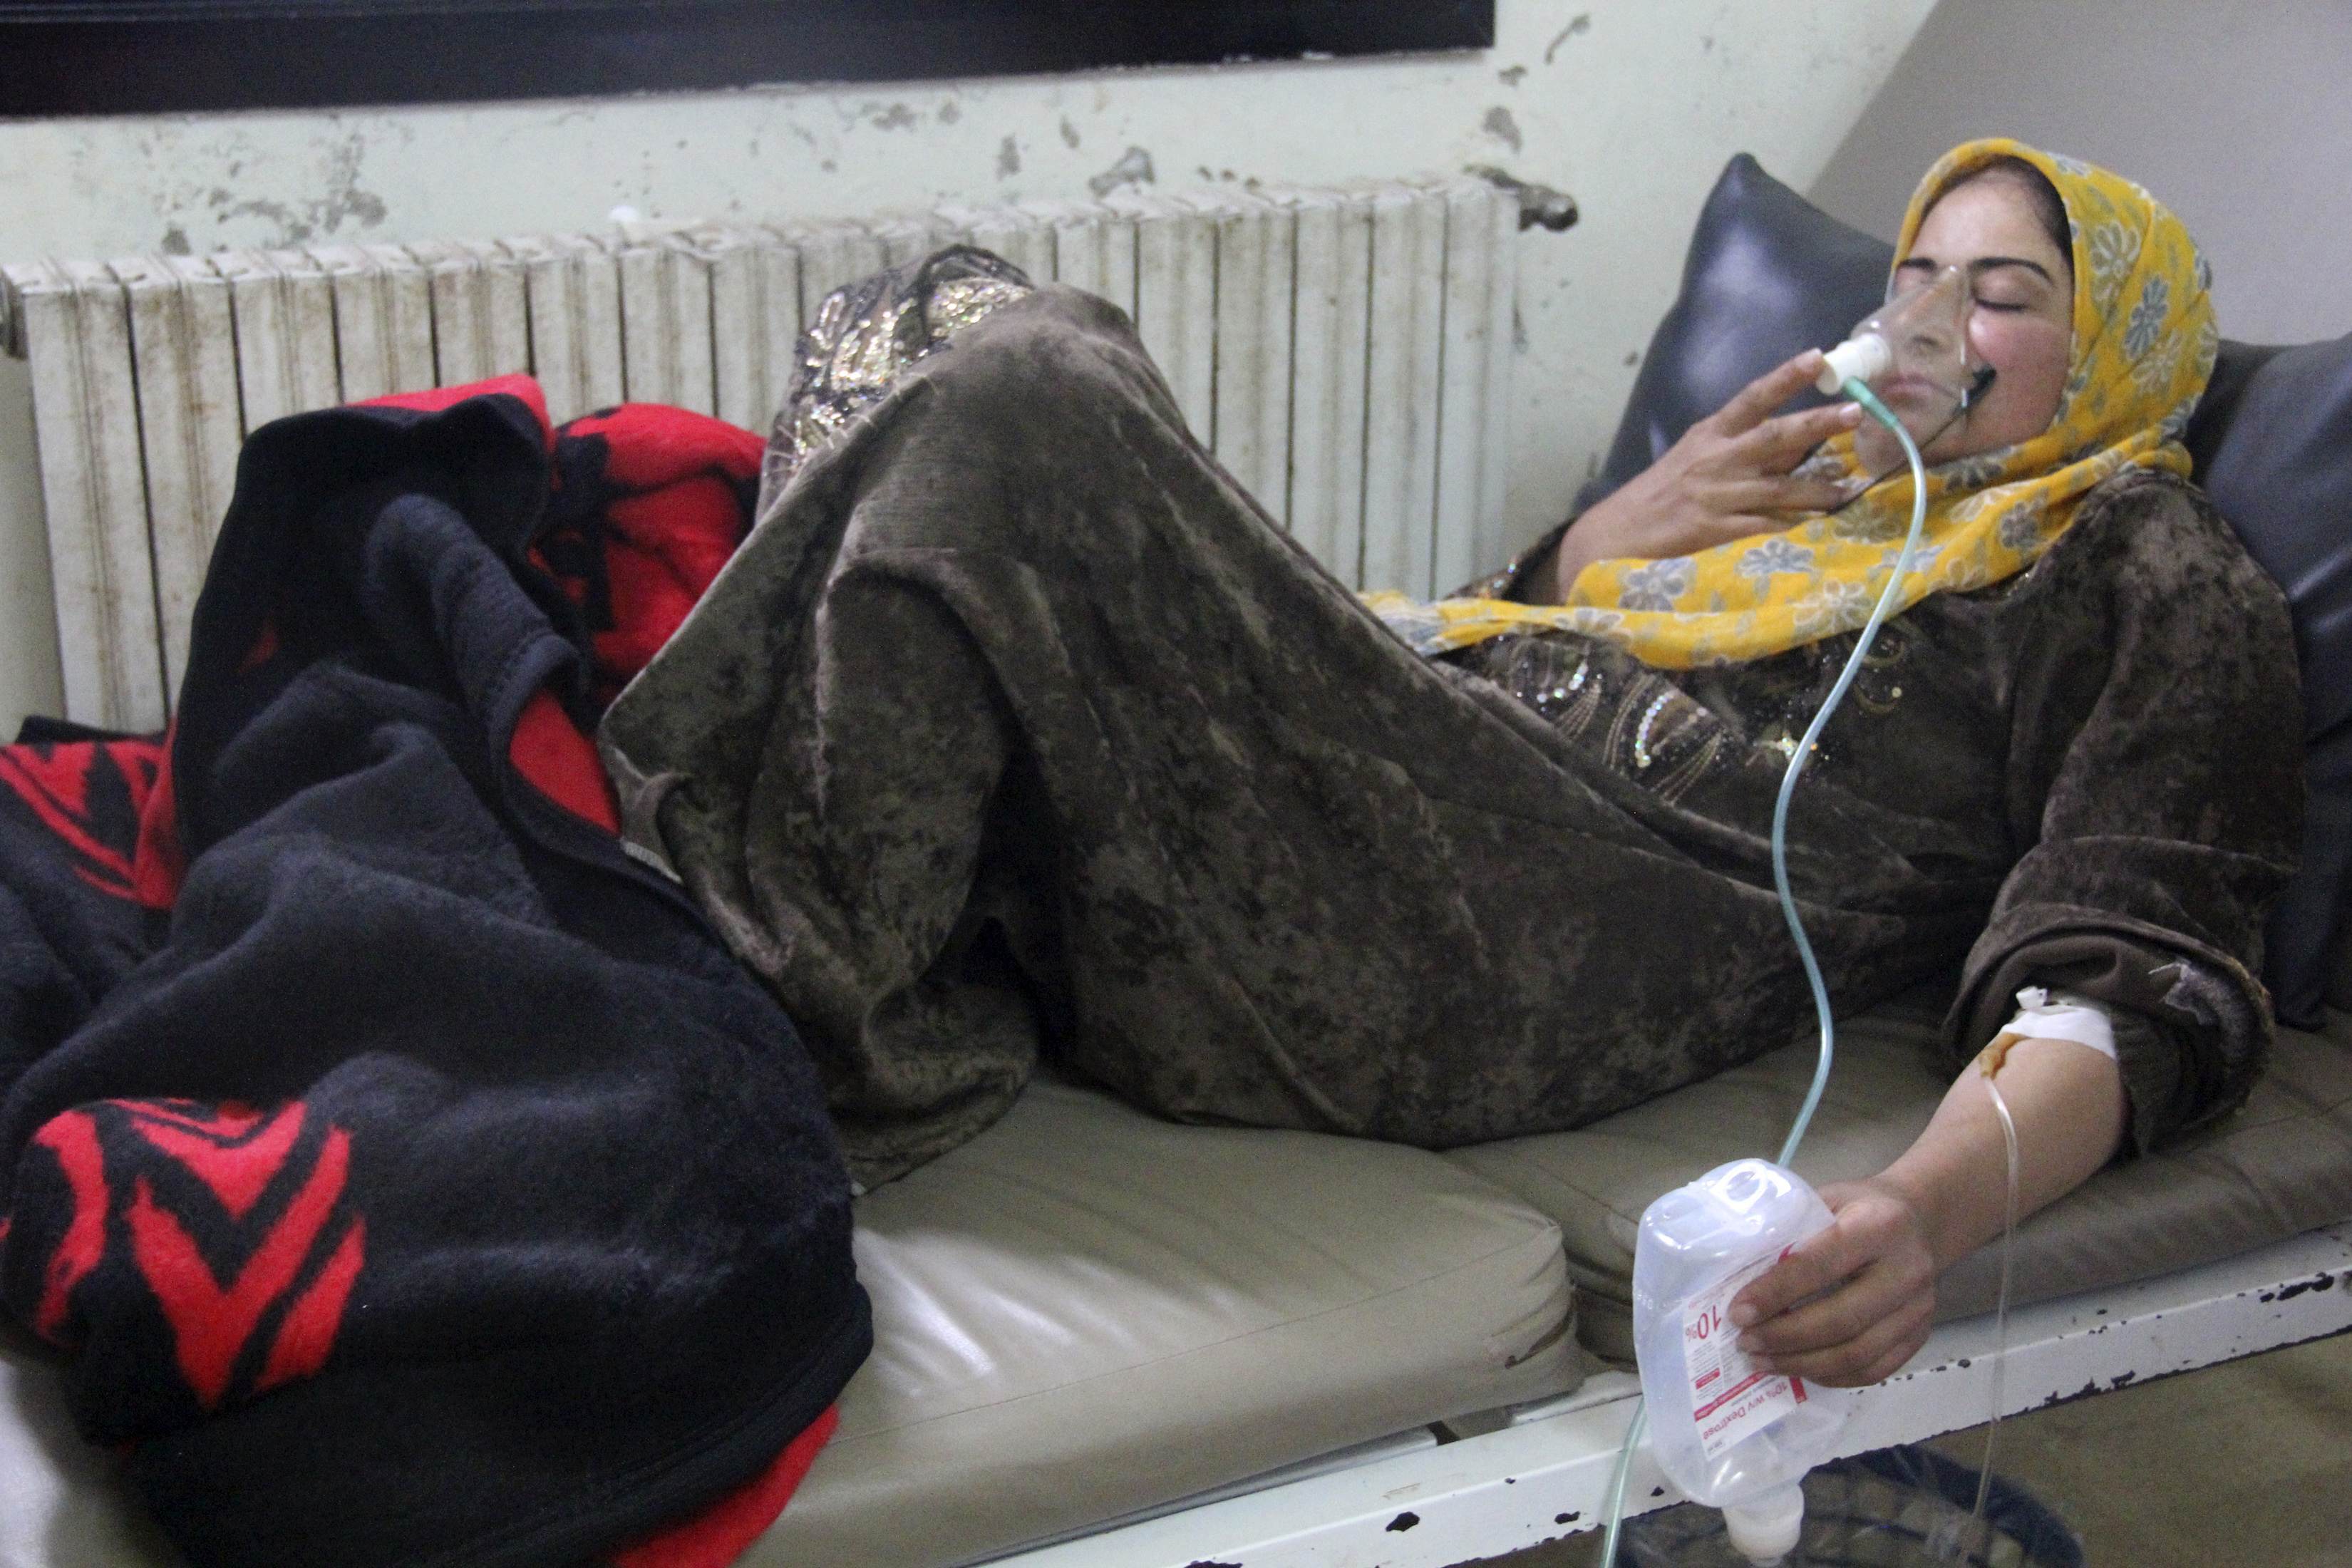 Συριακή αντιπολίτευση: Έχουμε αποδείξεις για χημική επίθεση με χλώριο